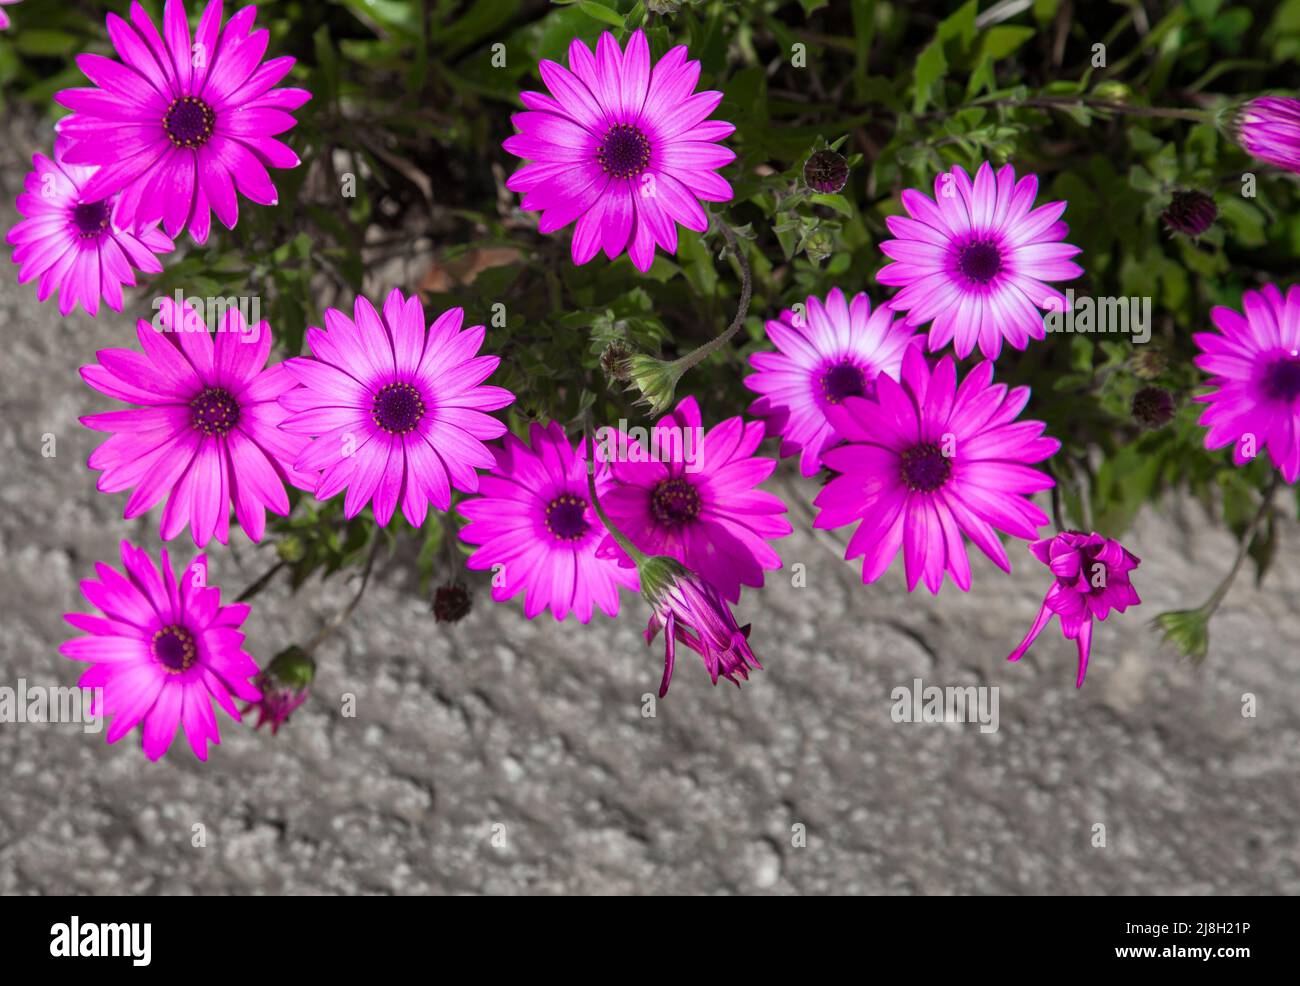 Sentirsi bene e fiori. Osteospermum viola Ecclonis fiore di Passione o osteospermum. Primo piano e vista dall'alto, messa a fuoco selettiva. Foto Stock